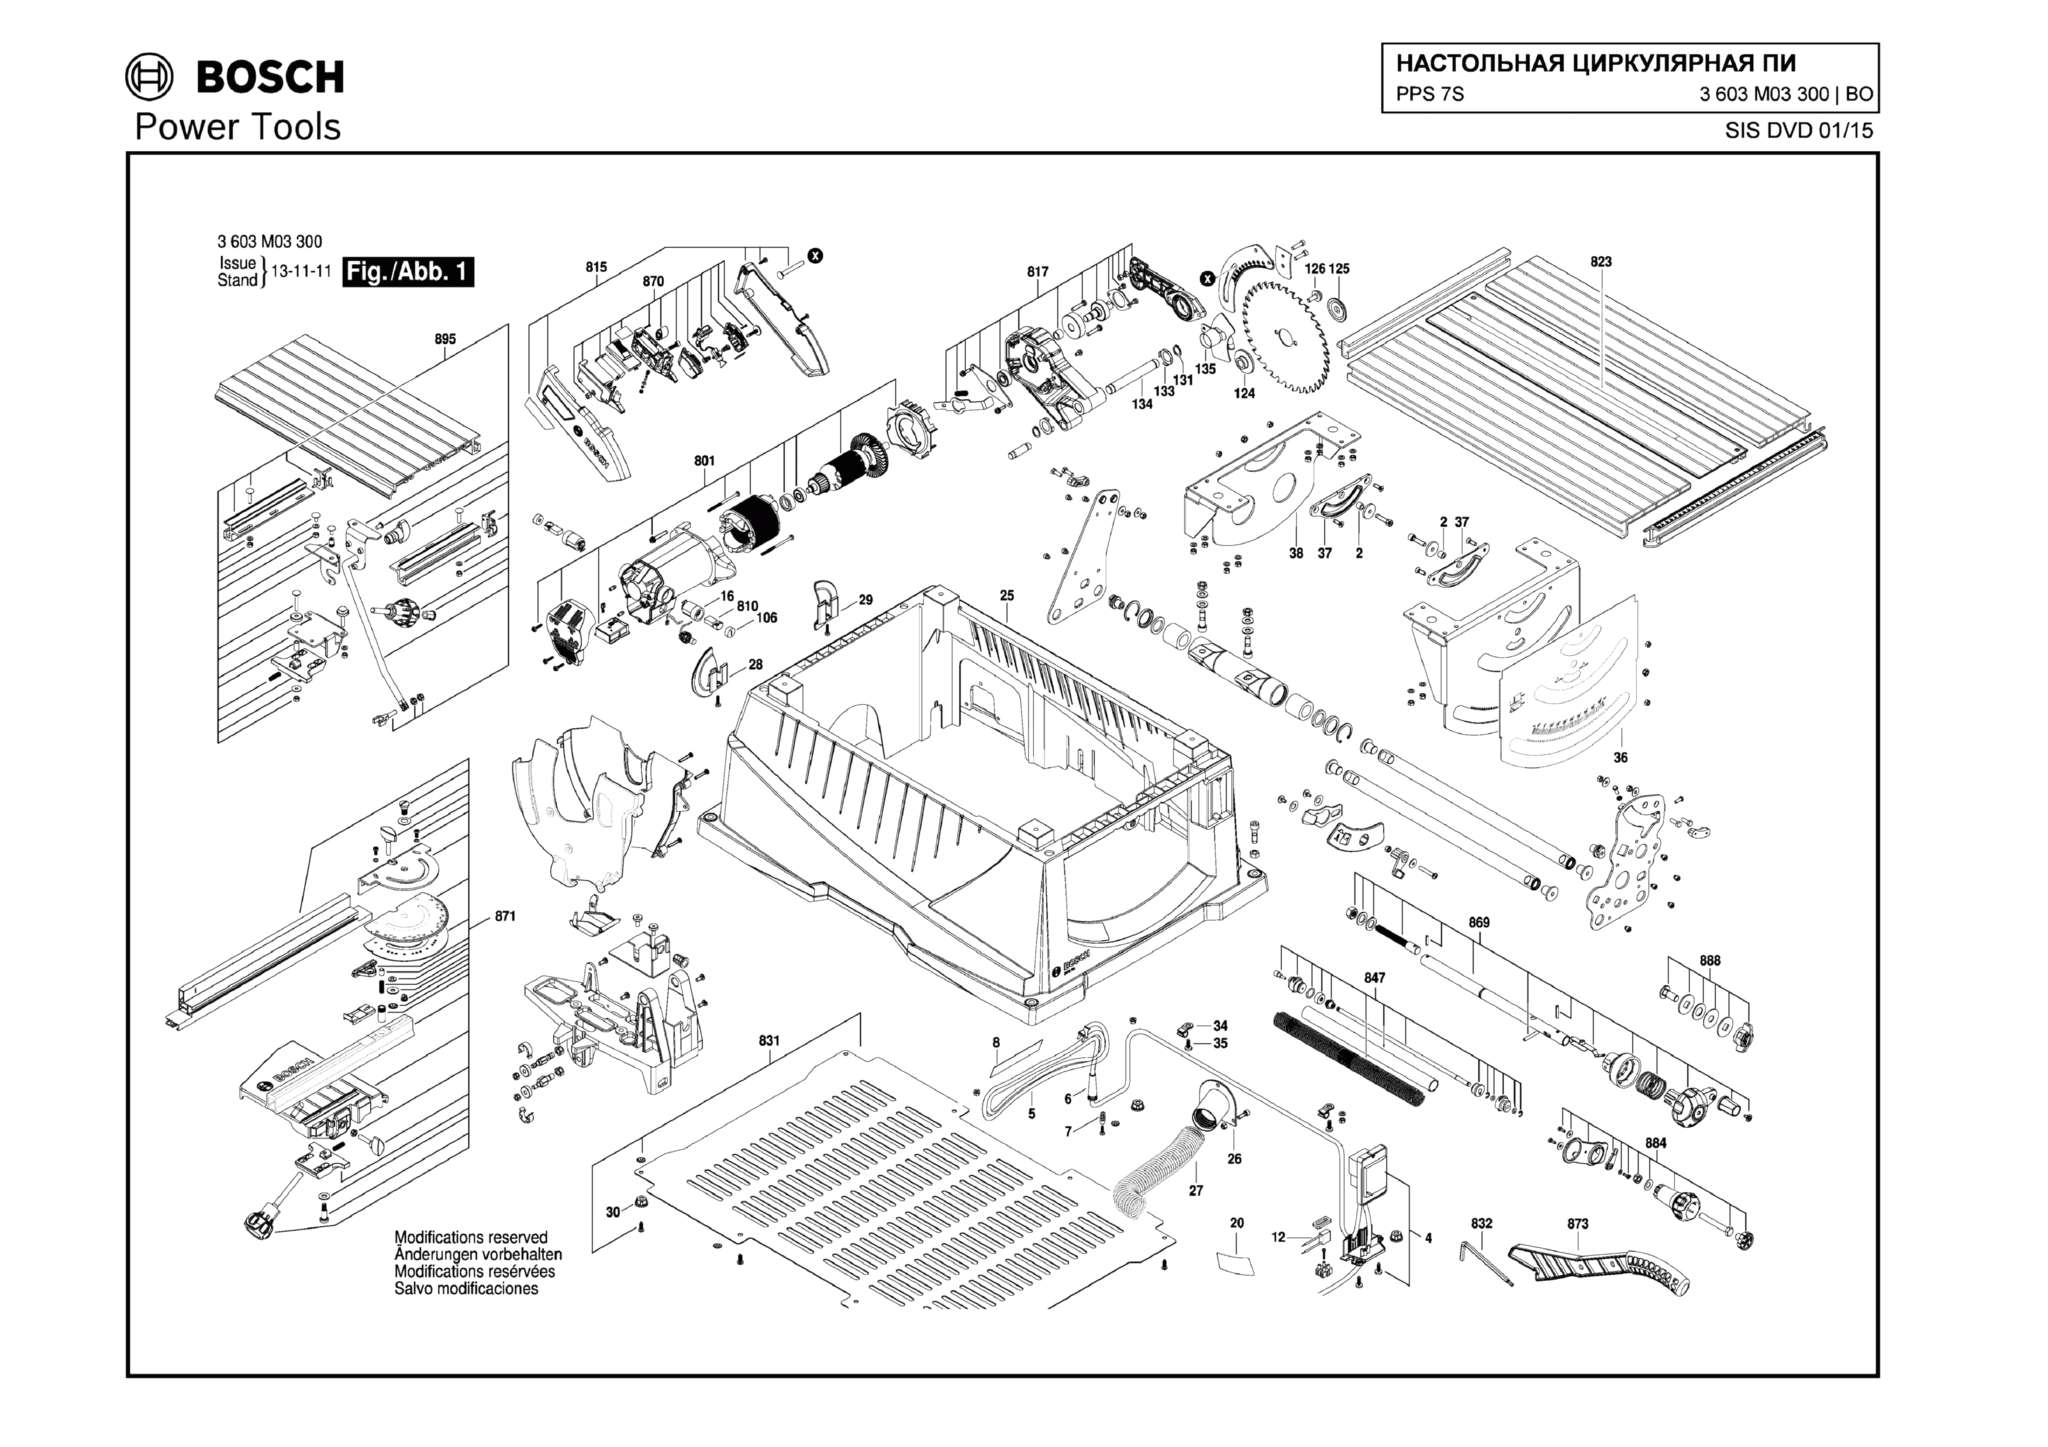 Запчасти, схема и деталировка Bosch PPS 7S (ТИП 3603M03300)